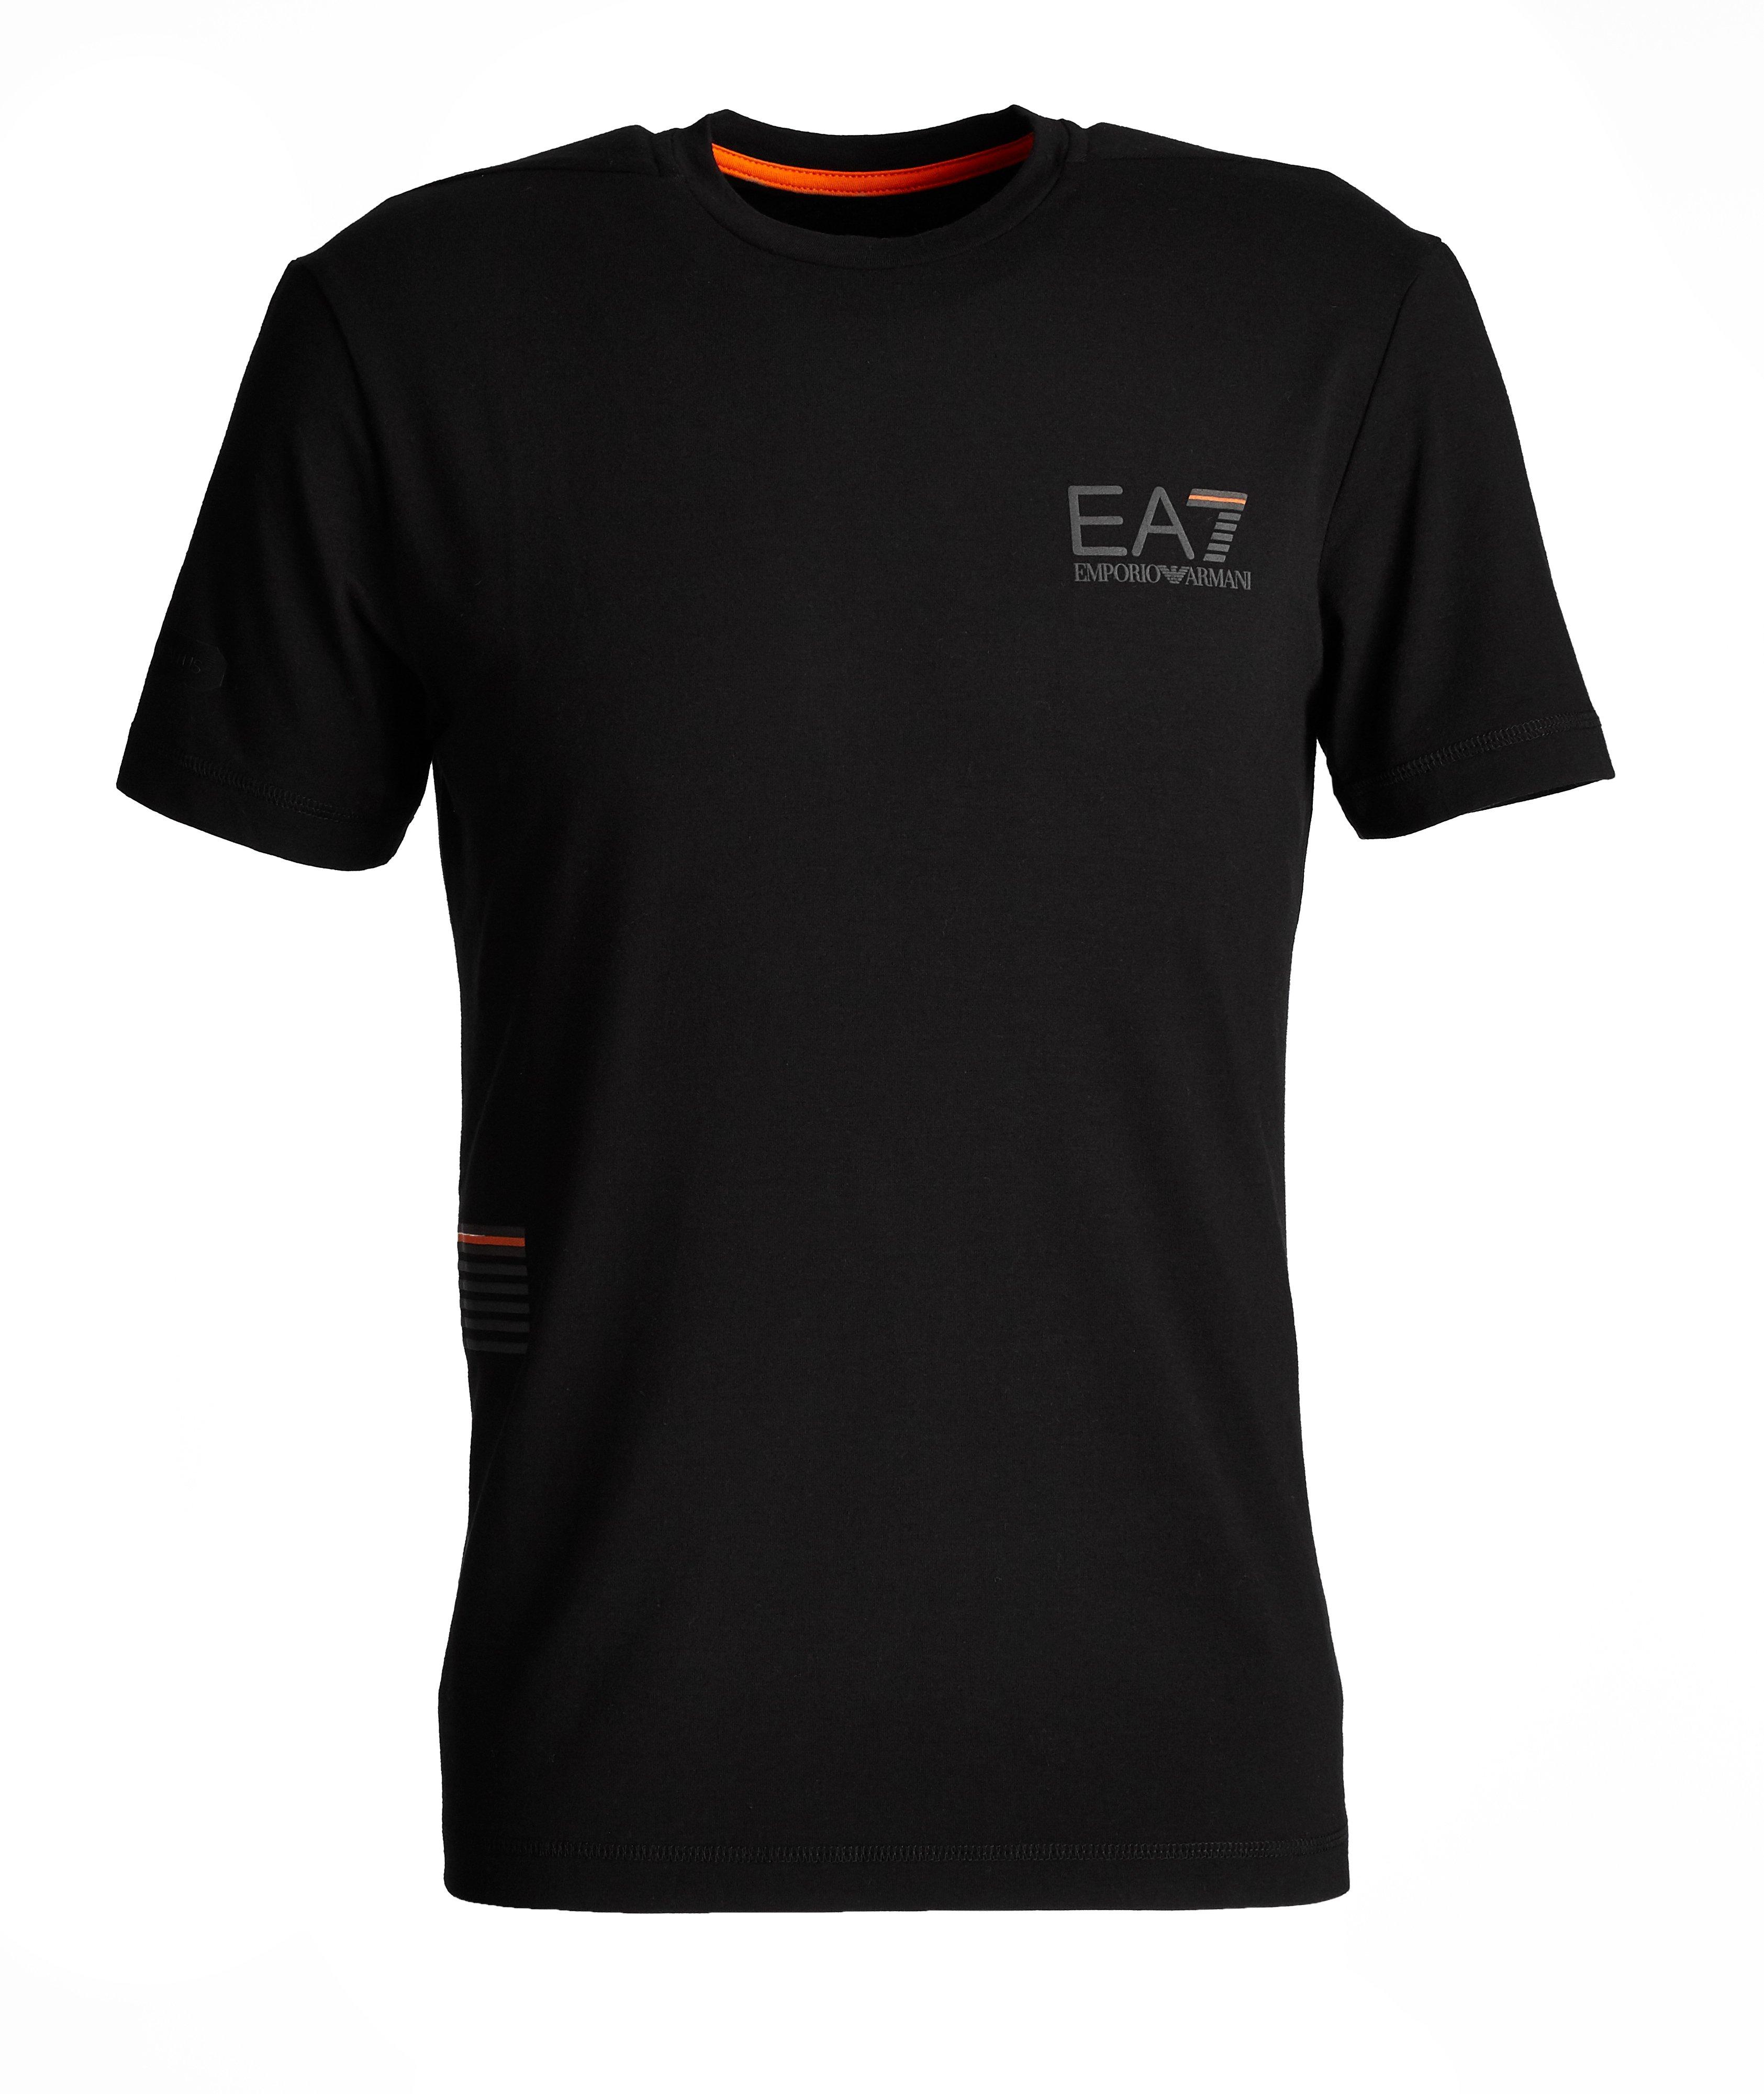 EA7 Cotton-Blend T-Shirt image 0